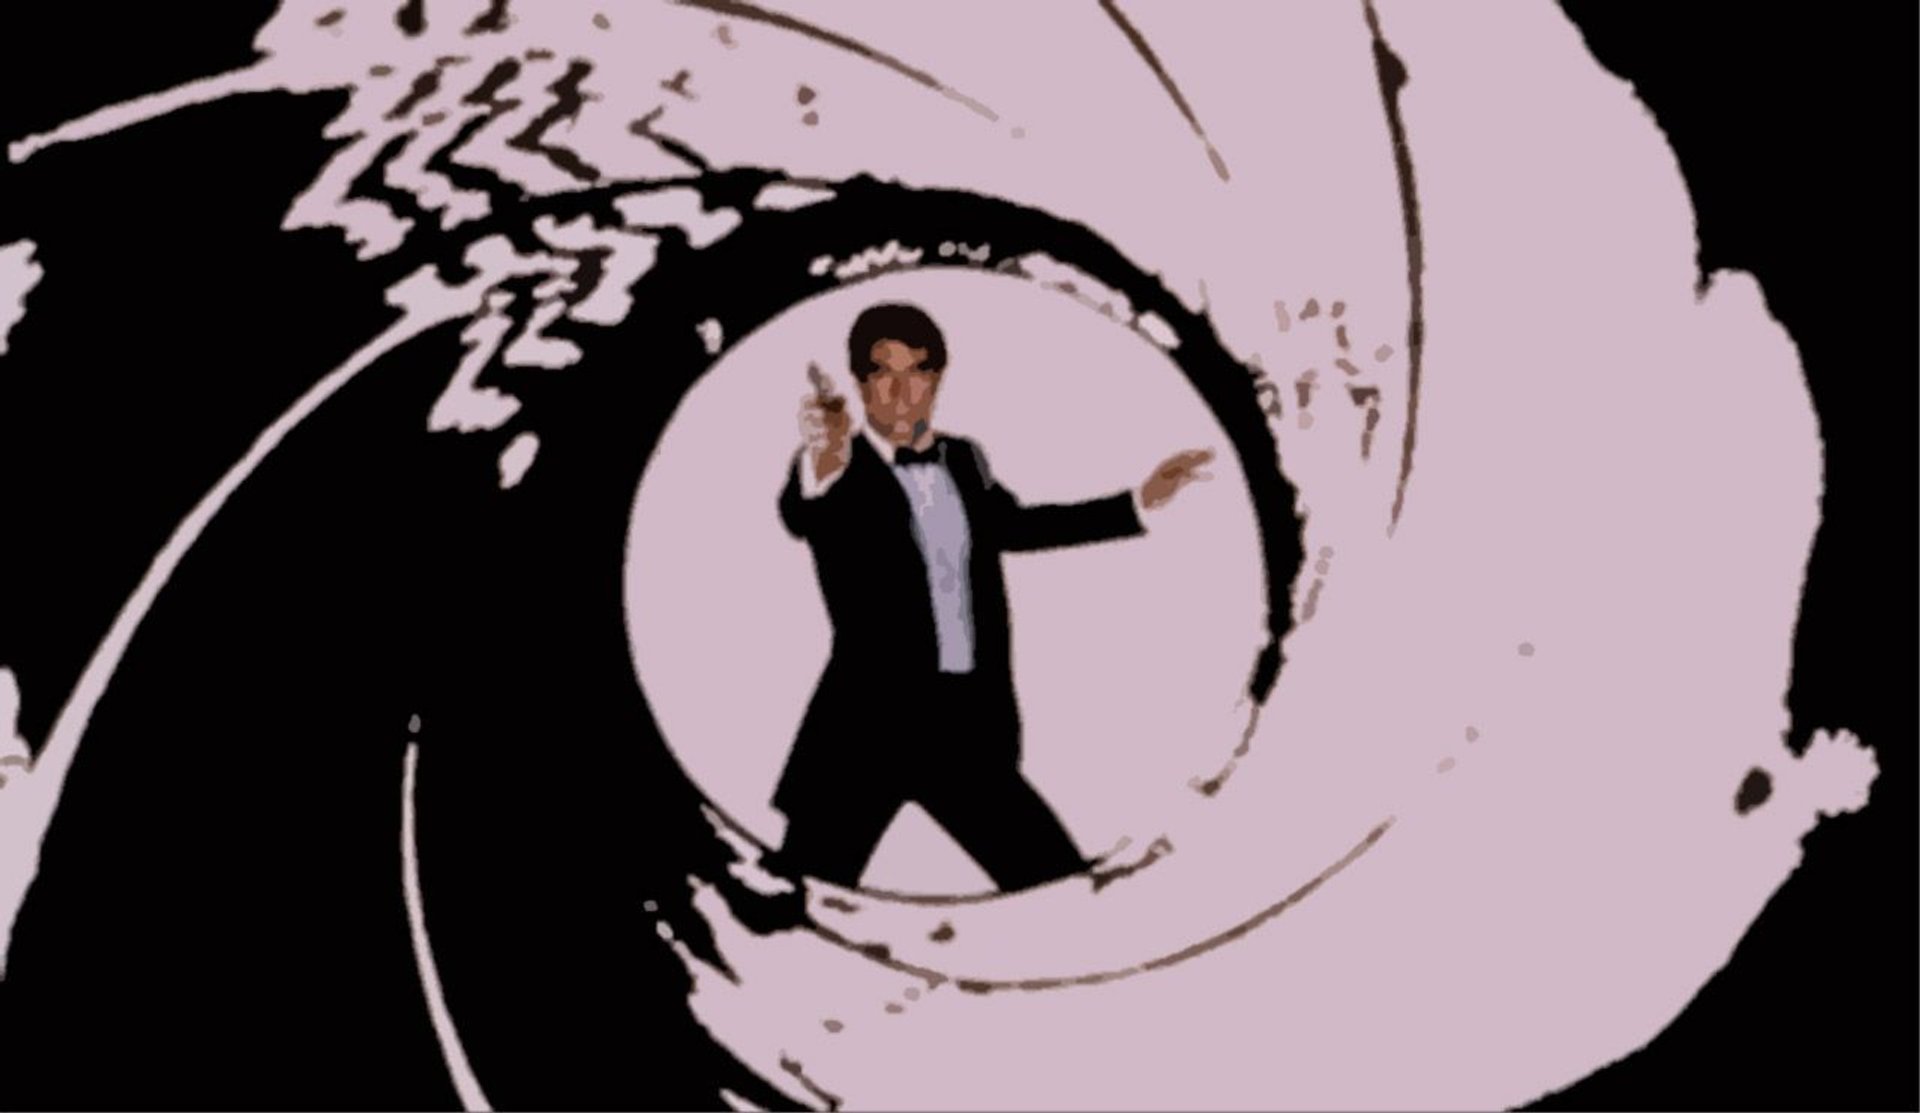 James Bond w klasycznym widoku lufy z pistoletu.